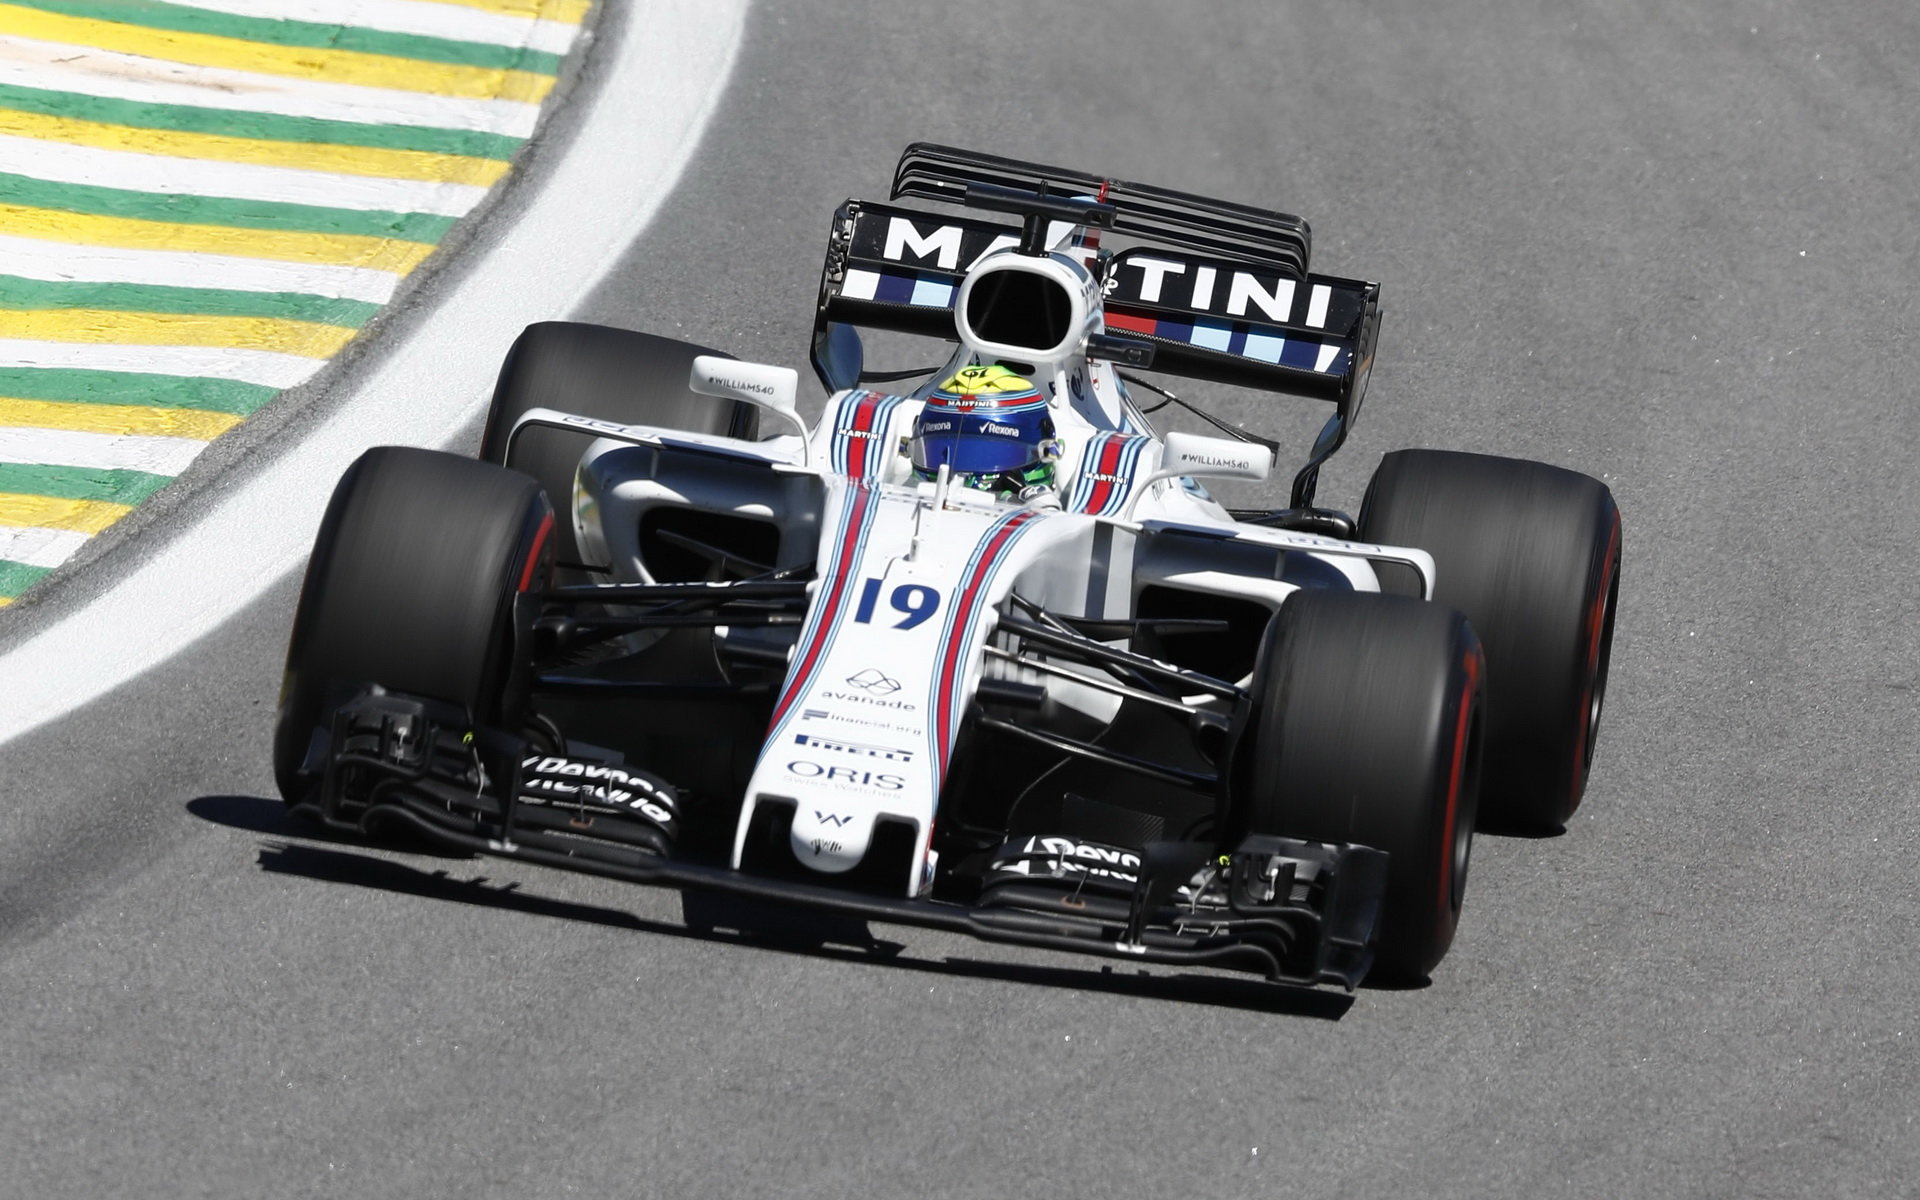 Felipe Massa v závodě v Brazílii